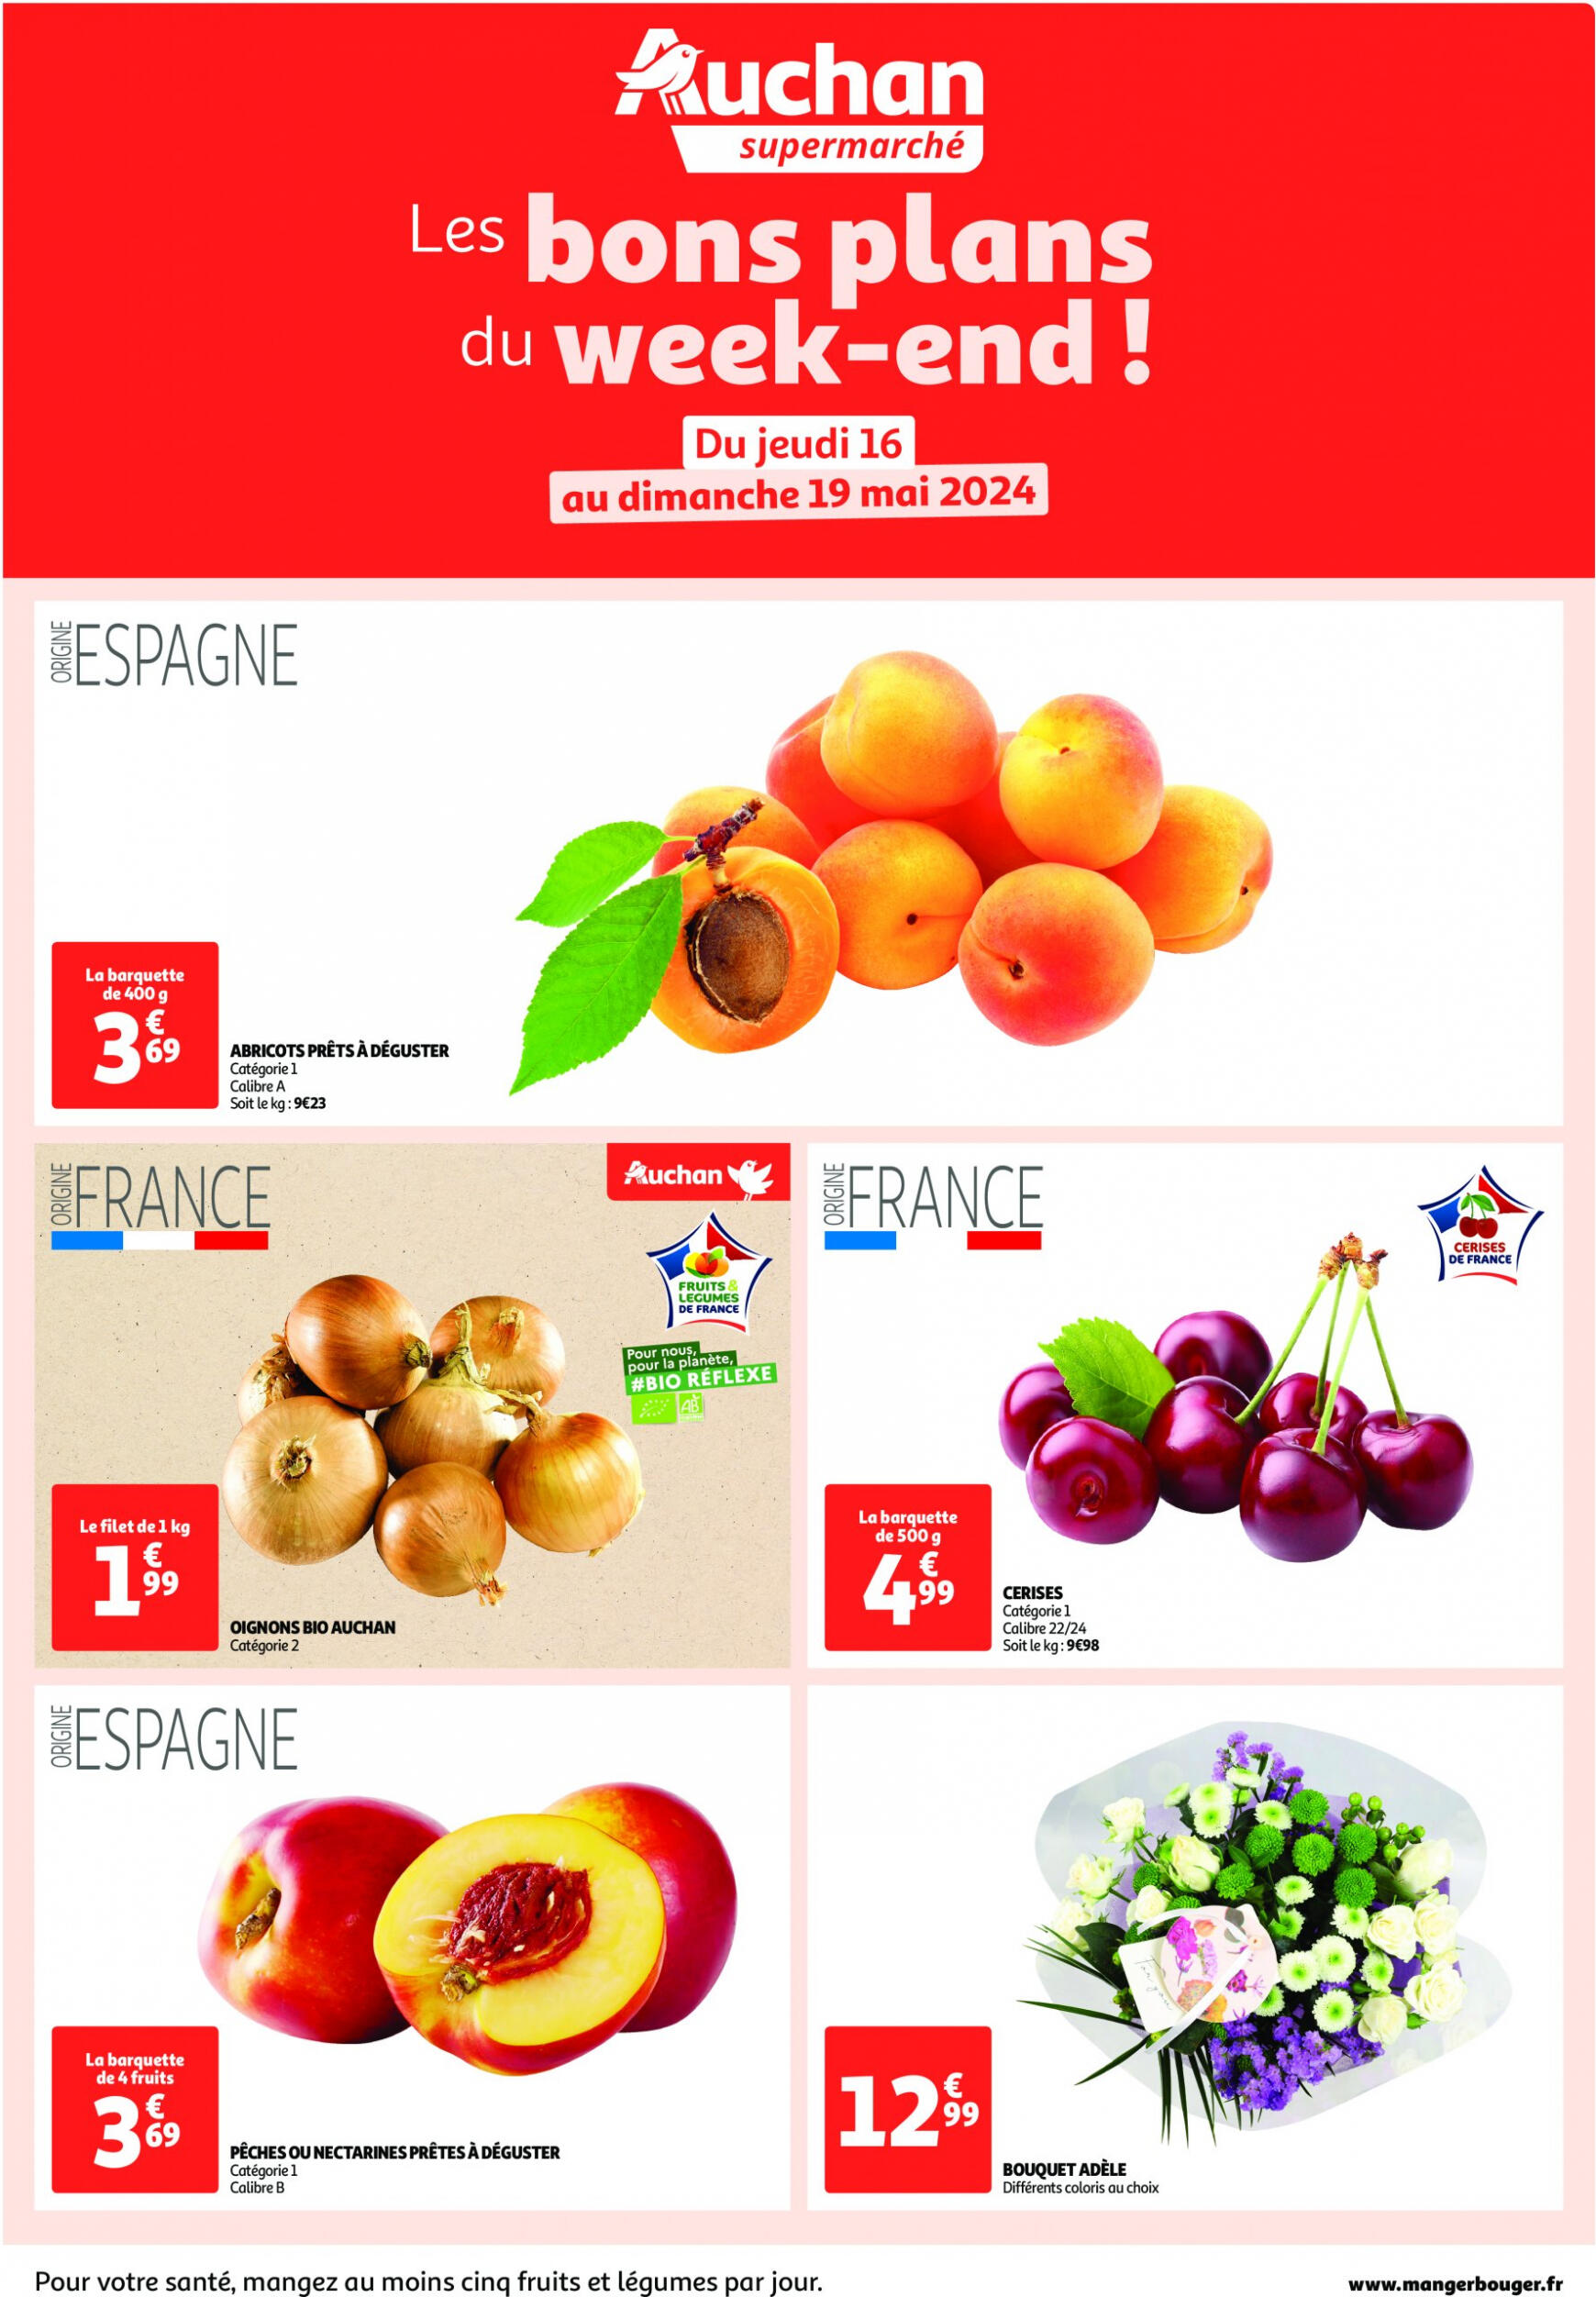 auchan - Auchan Supermarché - Les bons plans du week-end dans votre super ! folder huidig 16.05. - 19.05.